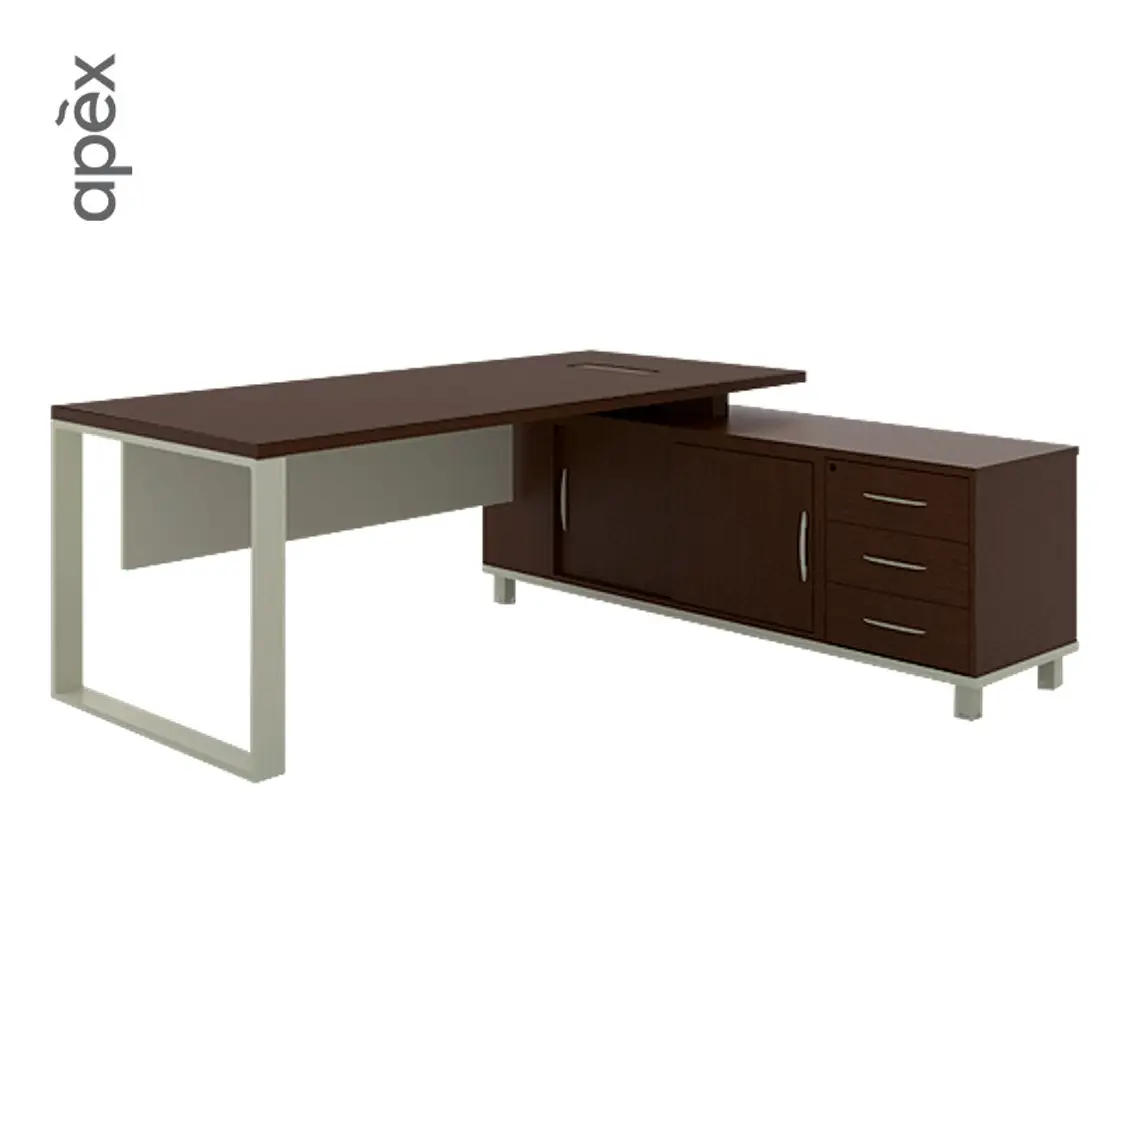 Table de bureau haut de gamme avec boîtier à rabat et système de verrouillage en aluminium, meubles de la série chaussettes